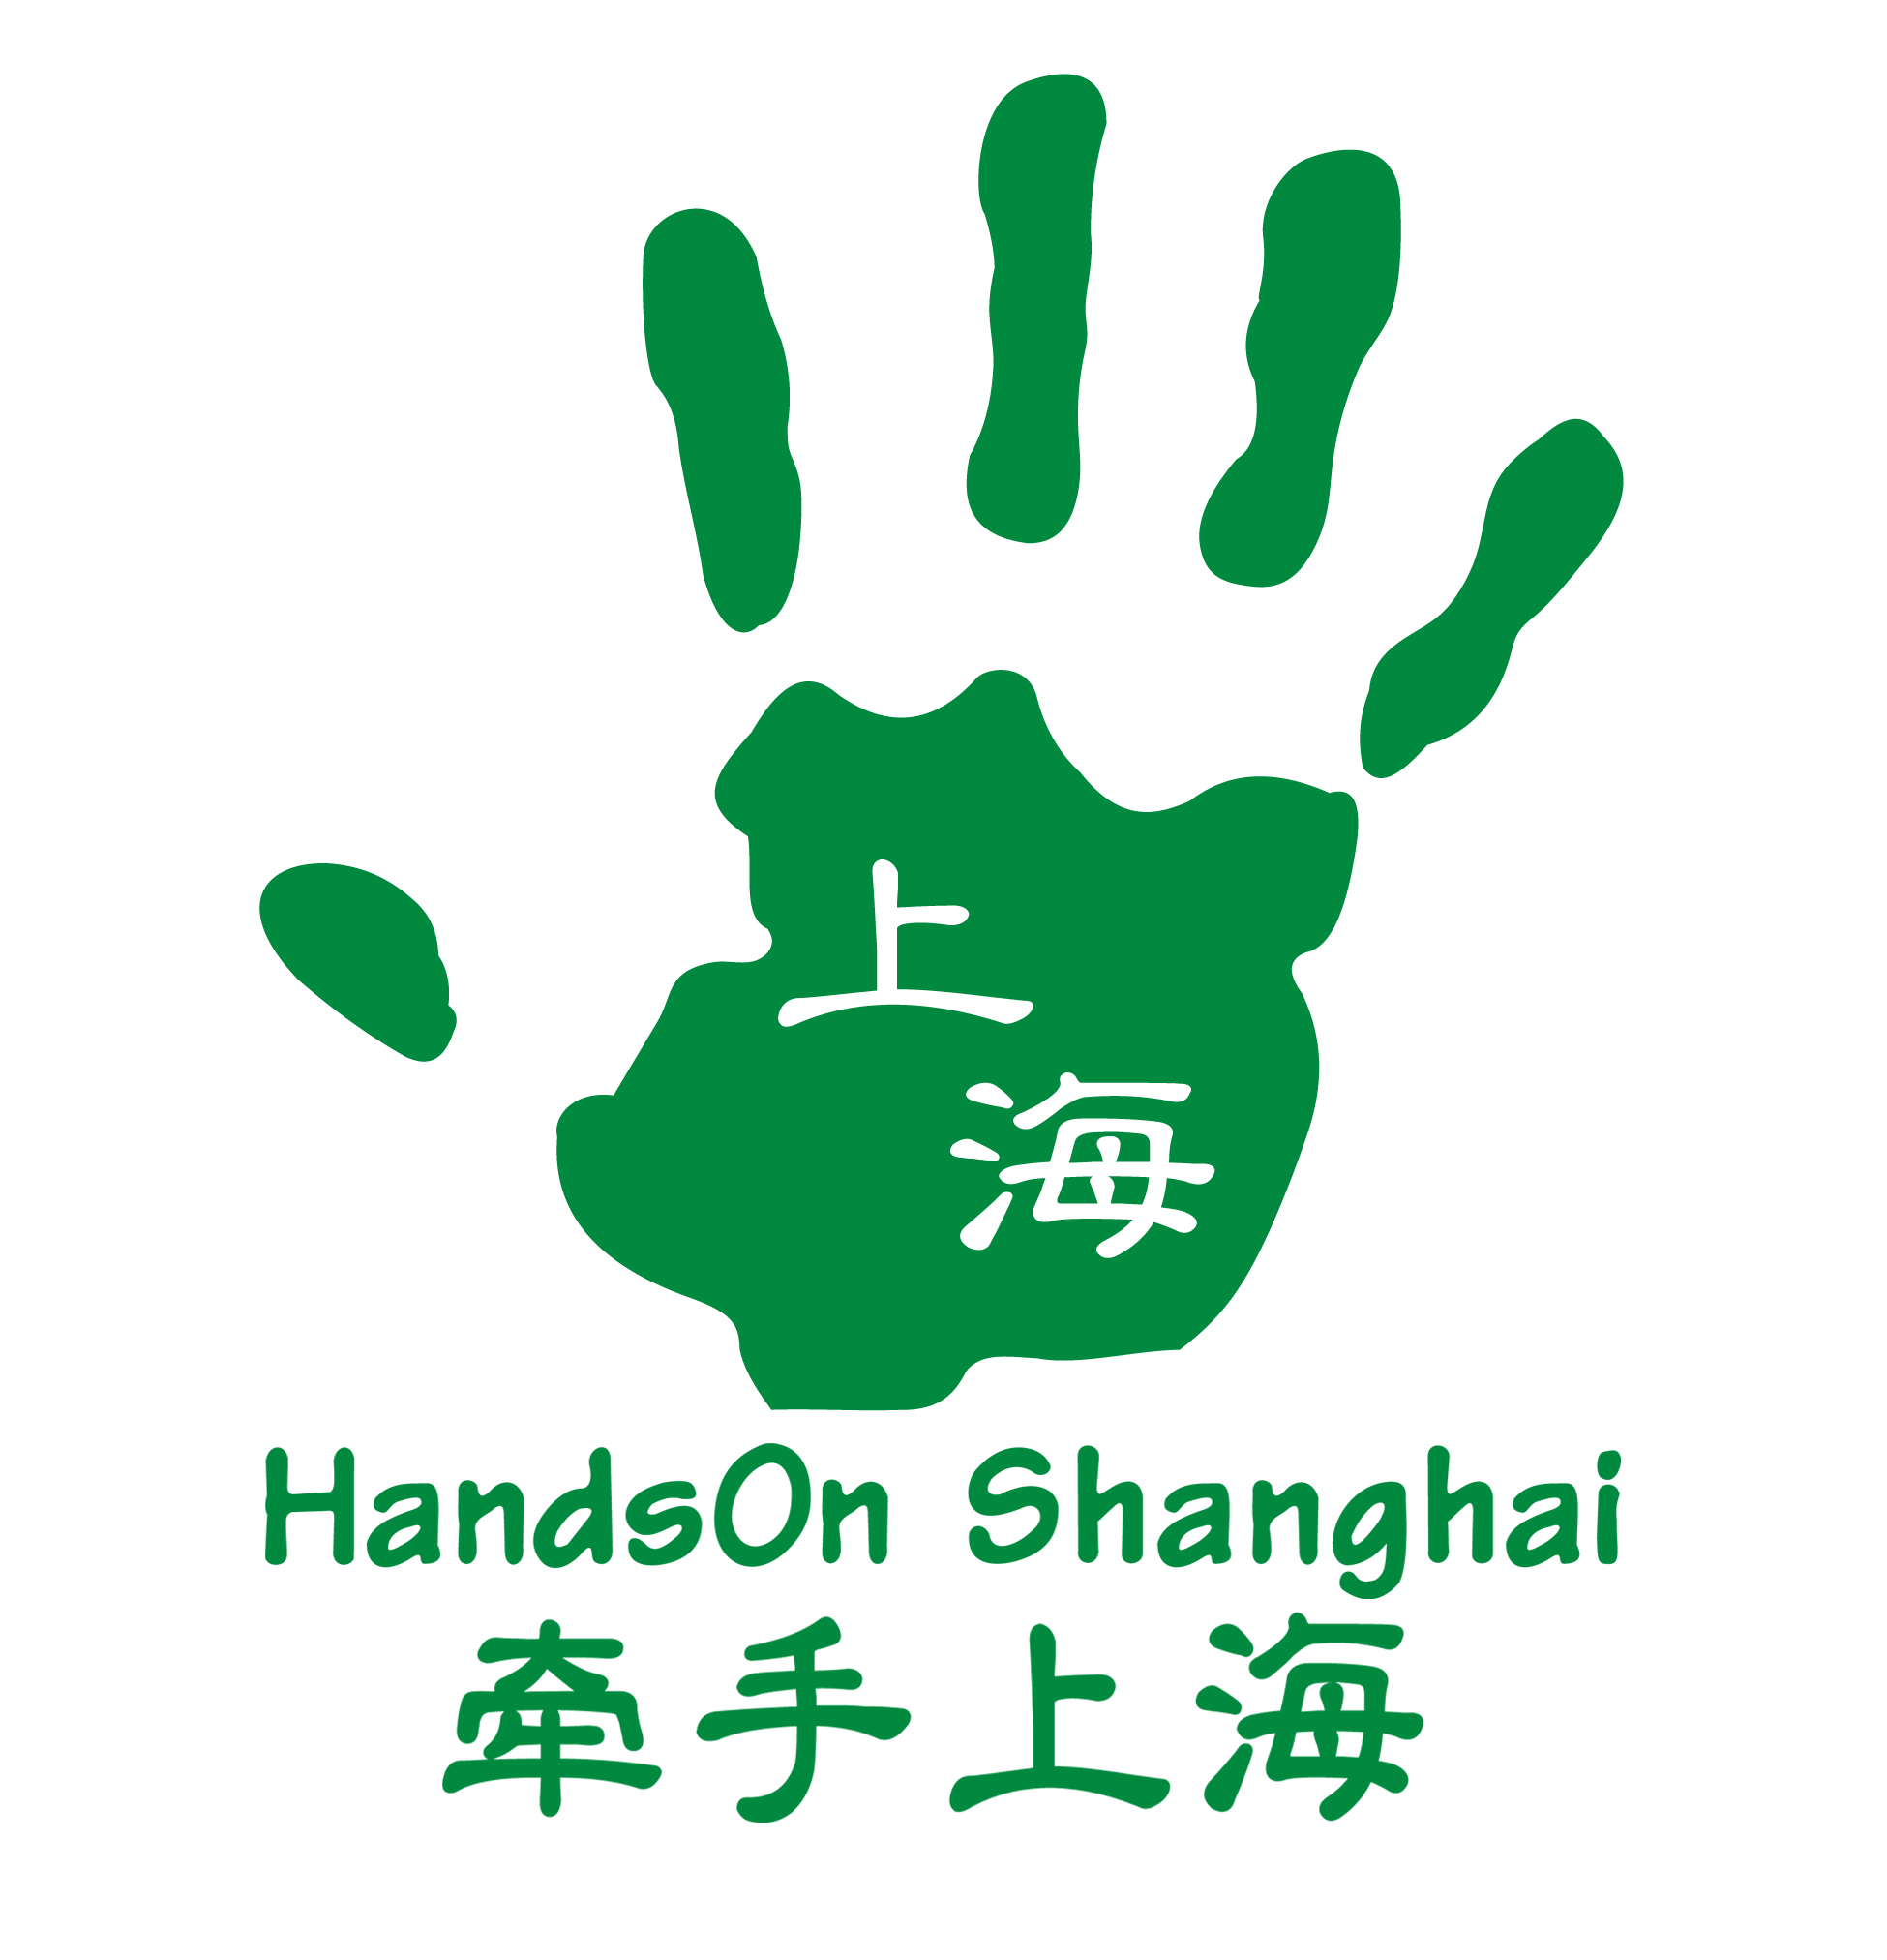 HandsOn Shanghai